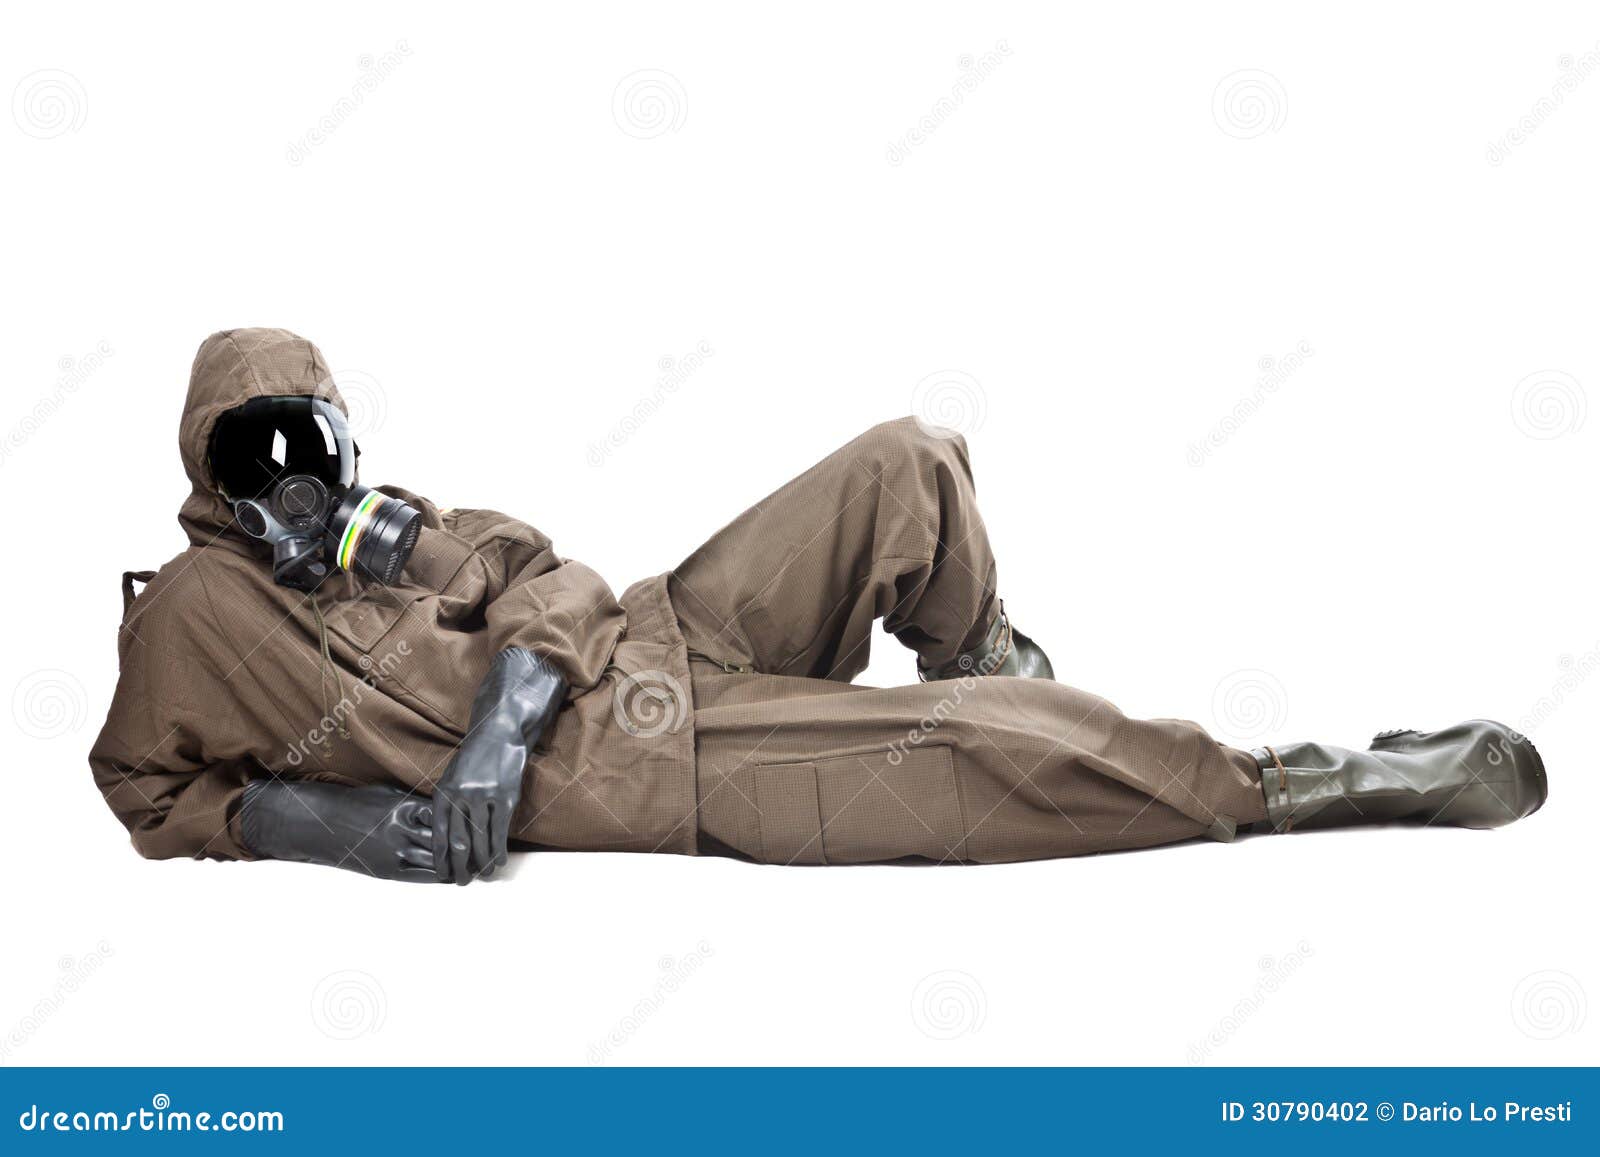 man-hazard-suit-layng-ground-wearing-nbc